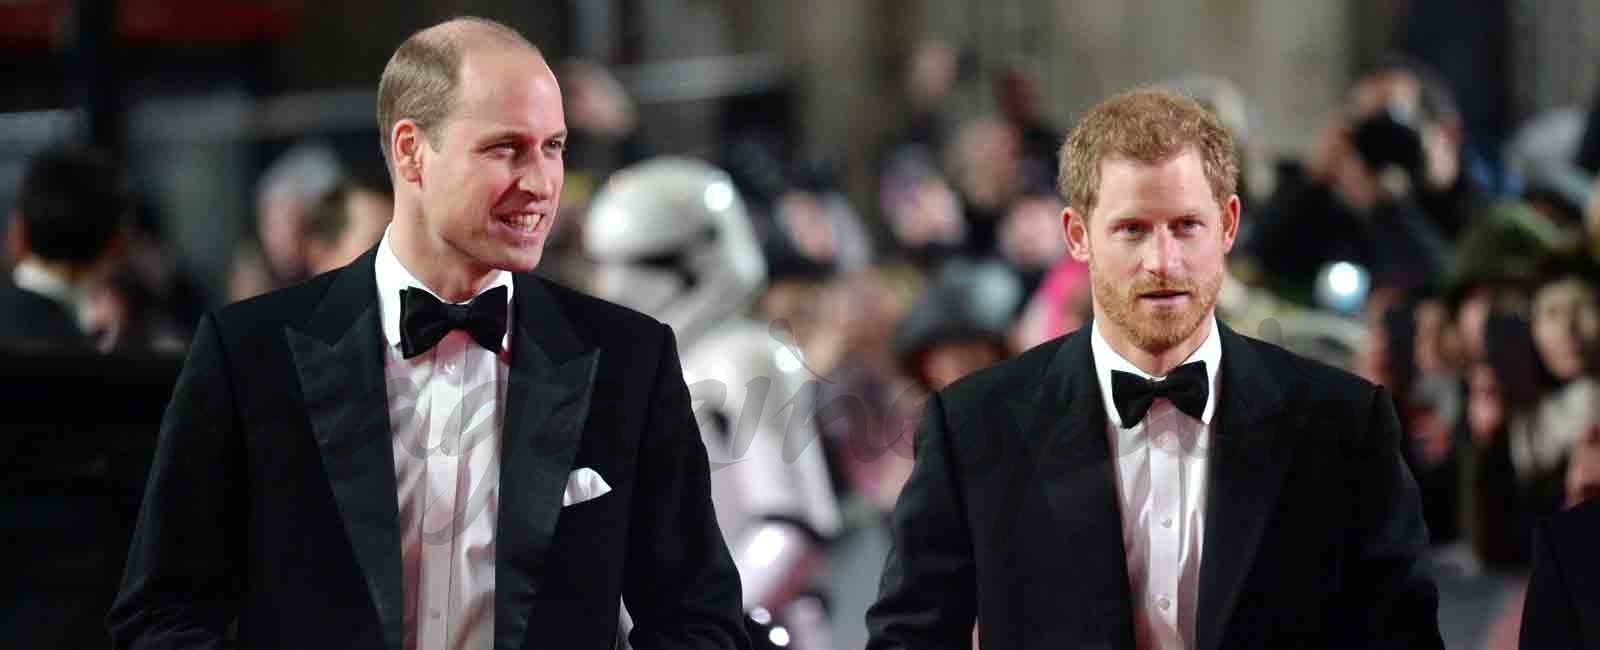 Los príncipes Guillermo y Harry de Inglaterra fans de “Star Wars”